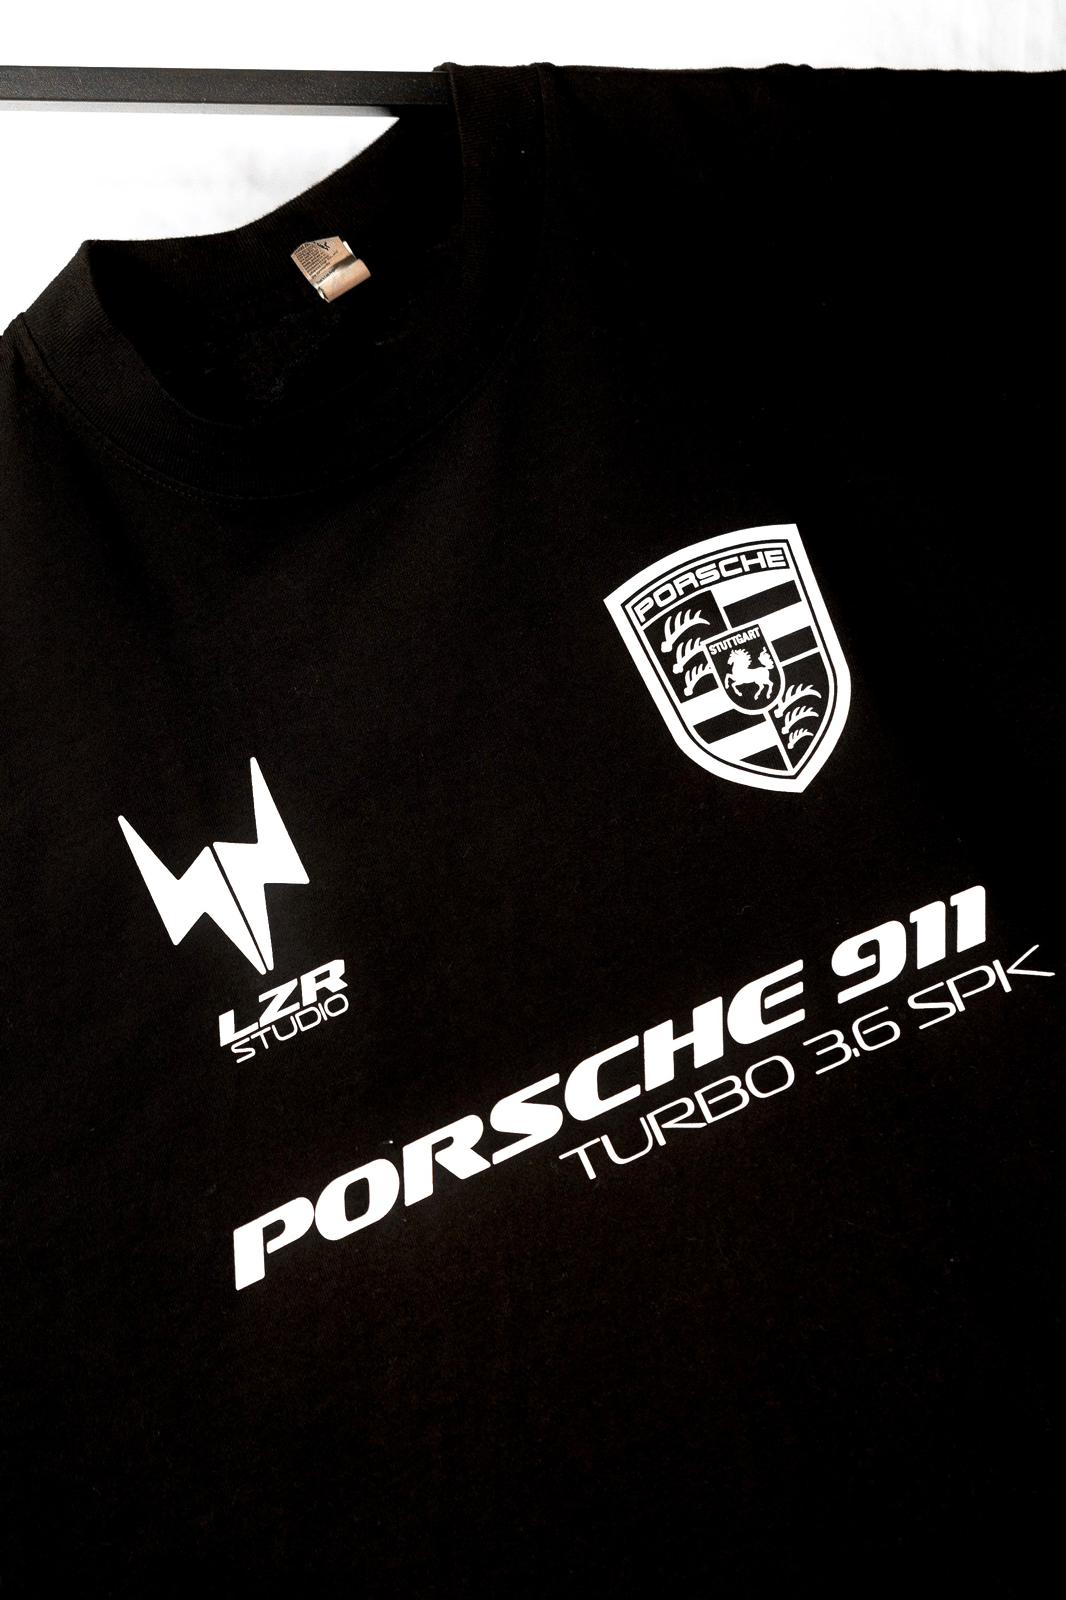 Porsche Long Sleeve FBL Shirt - Away Black